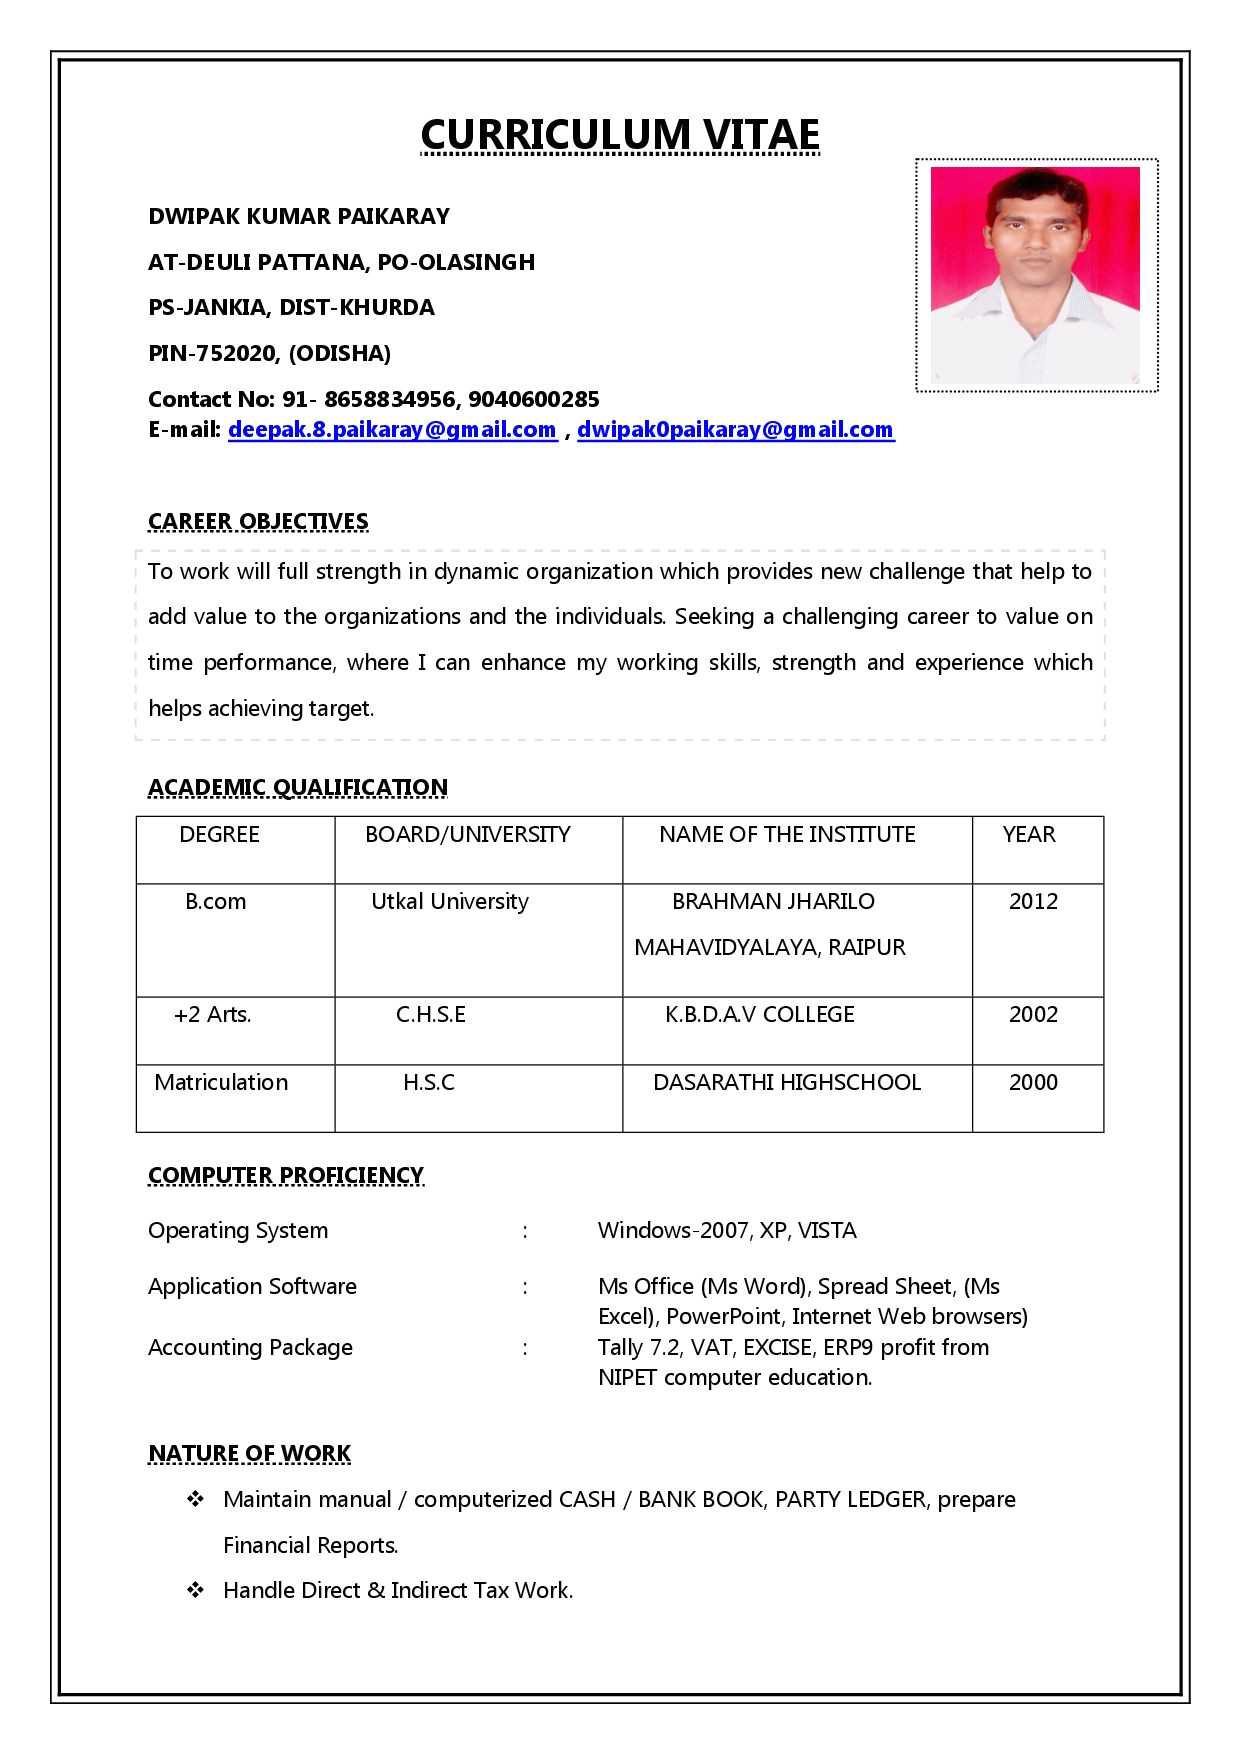 Resume Letter format for Job Job Job Resume format New Resume format Job Resume